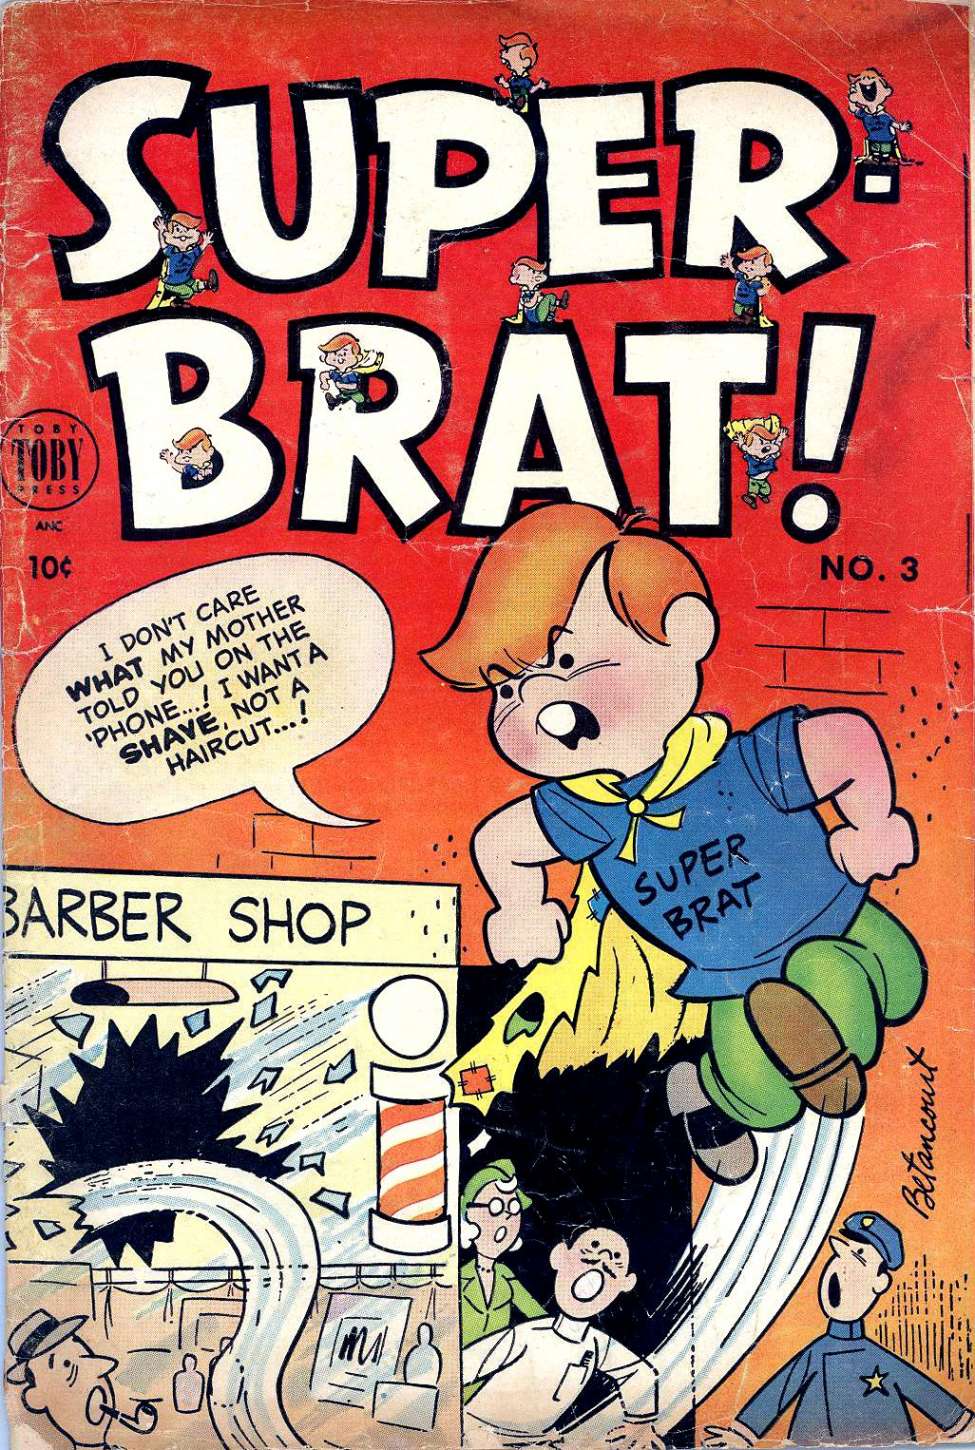 Book Cover For Super-Brat 3